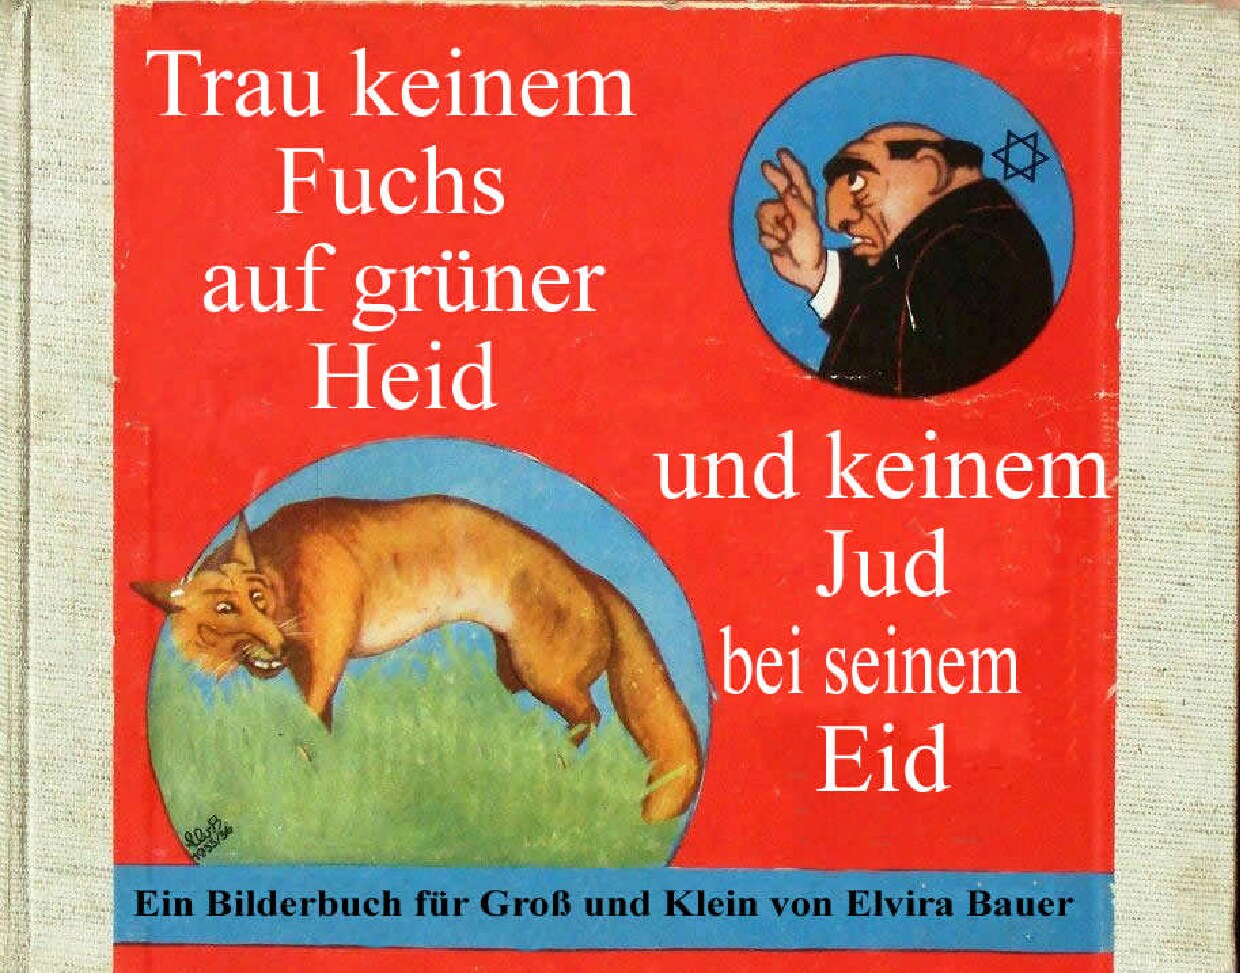 Trau keinem Fuchs auf gruener Heid und keinem Jud bei seinem Eid (1936, 46 S., Scan)